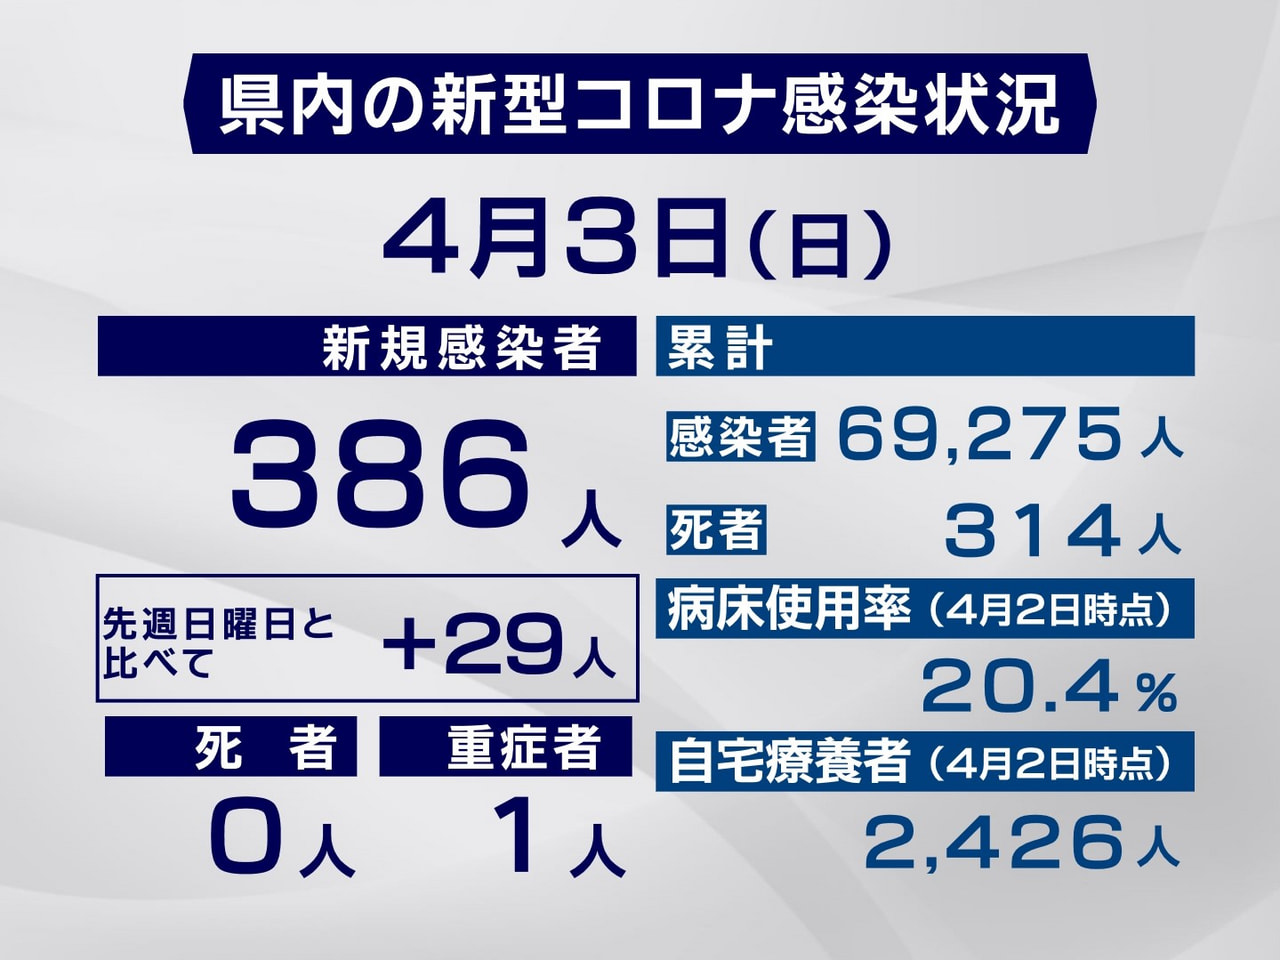 岐阜県は３日、新型コロナウイルスの新規感染者が３８６人確認されたと発表しました。...